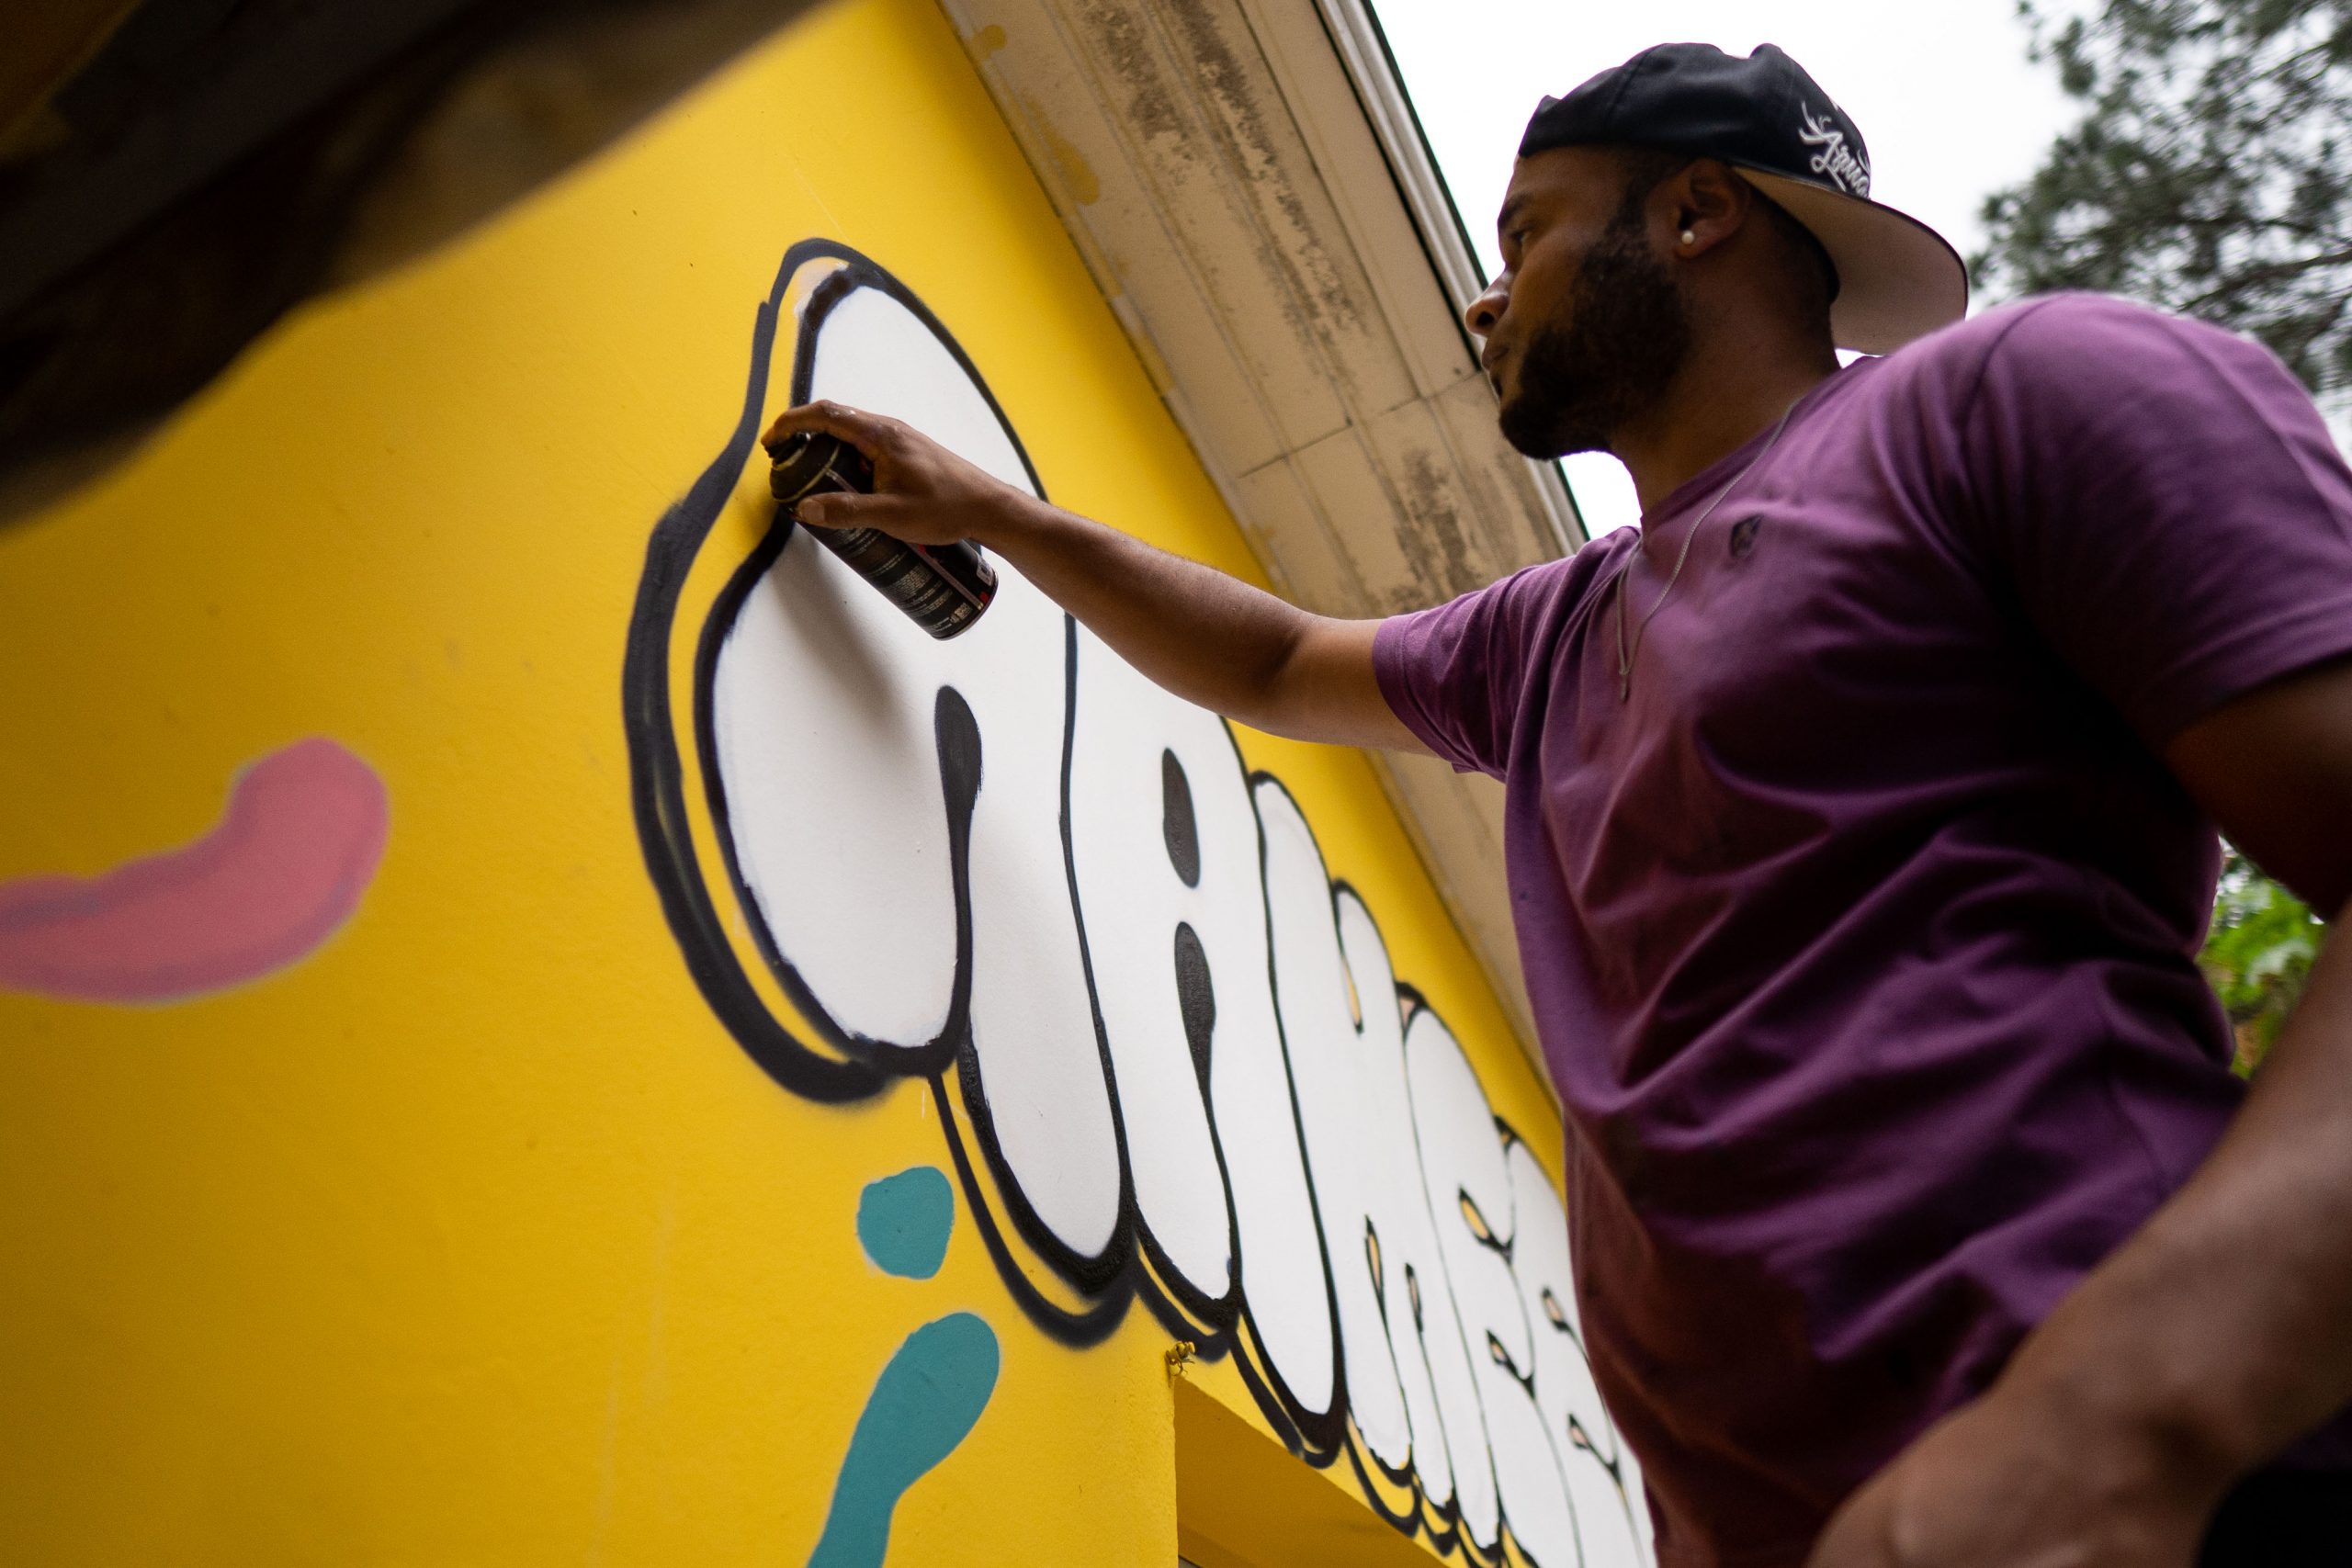 Fotografia de um homem segurando uma lata de tinta e desenhando um grafite na parede.